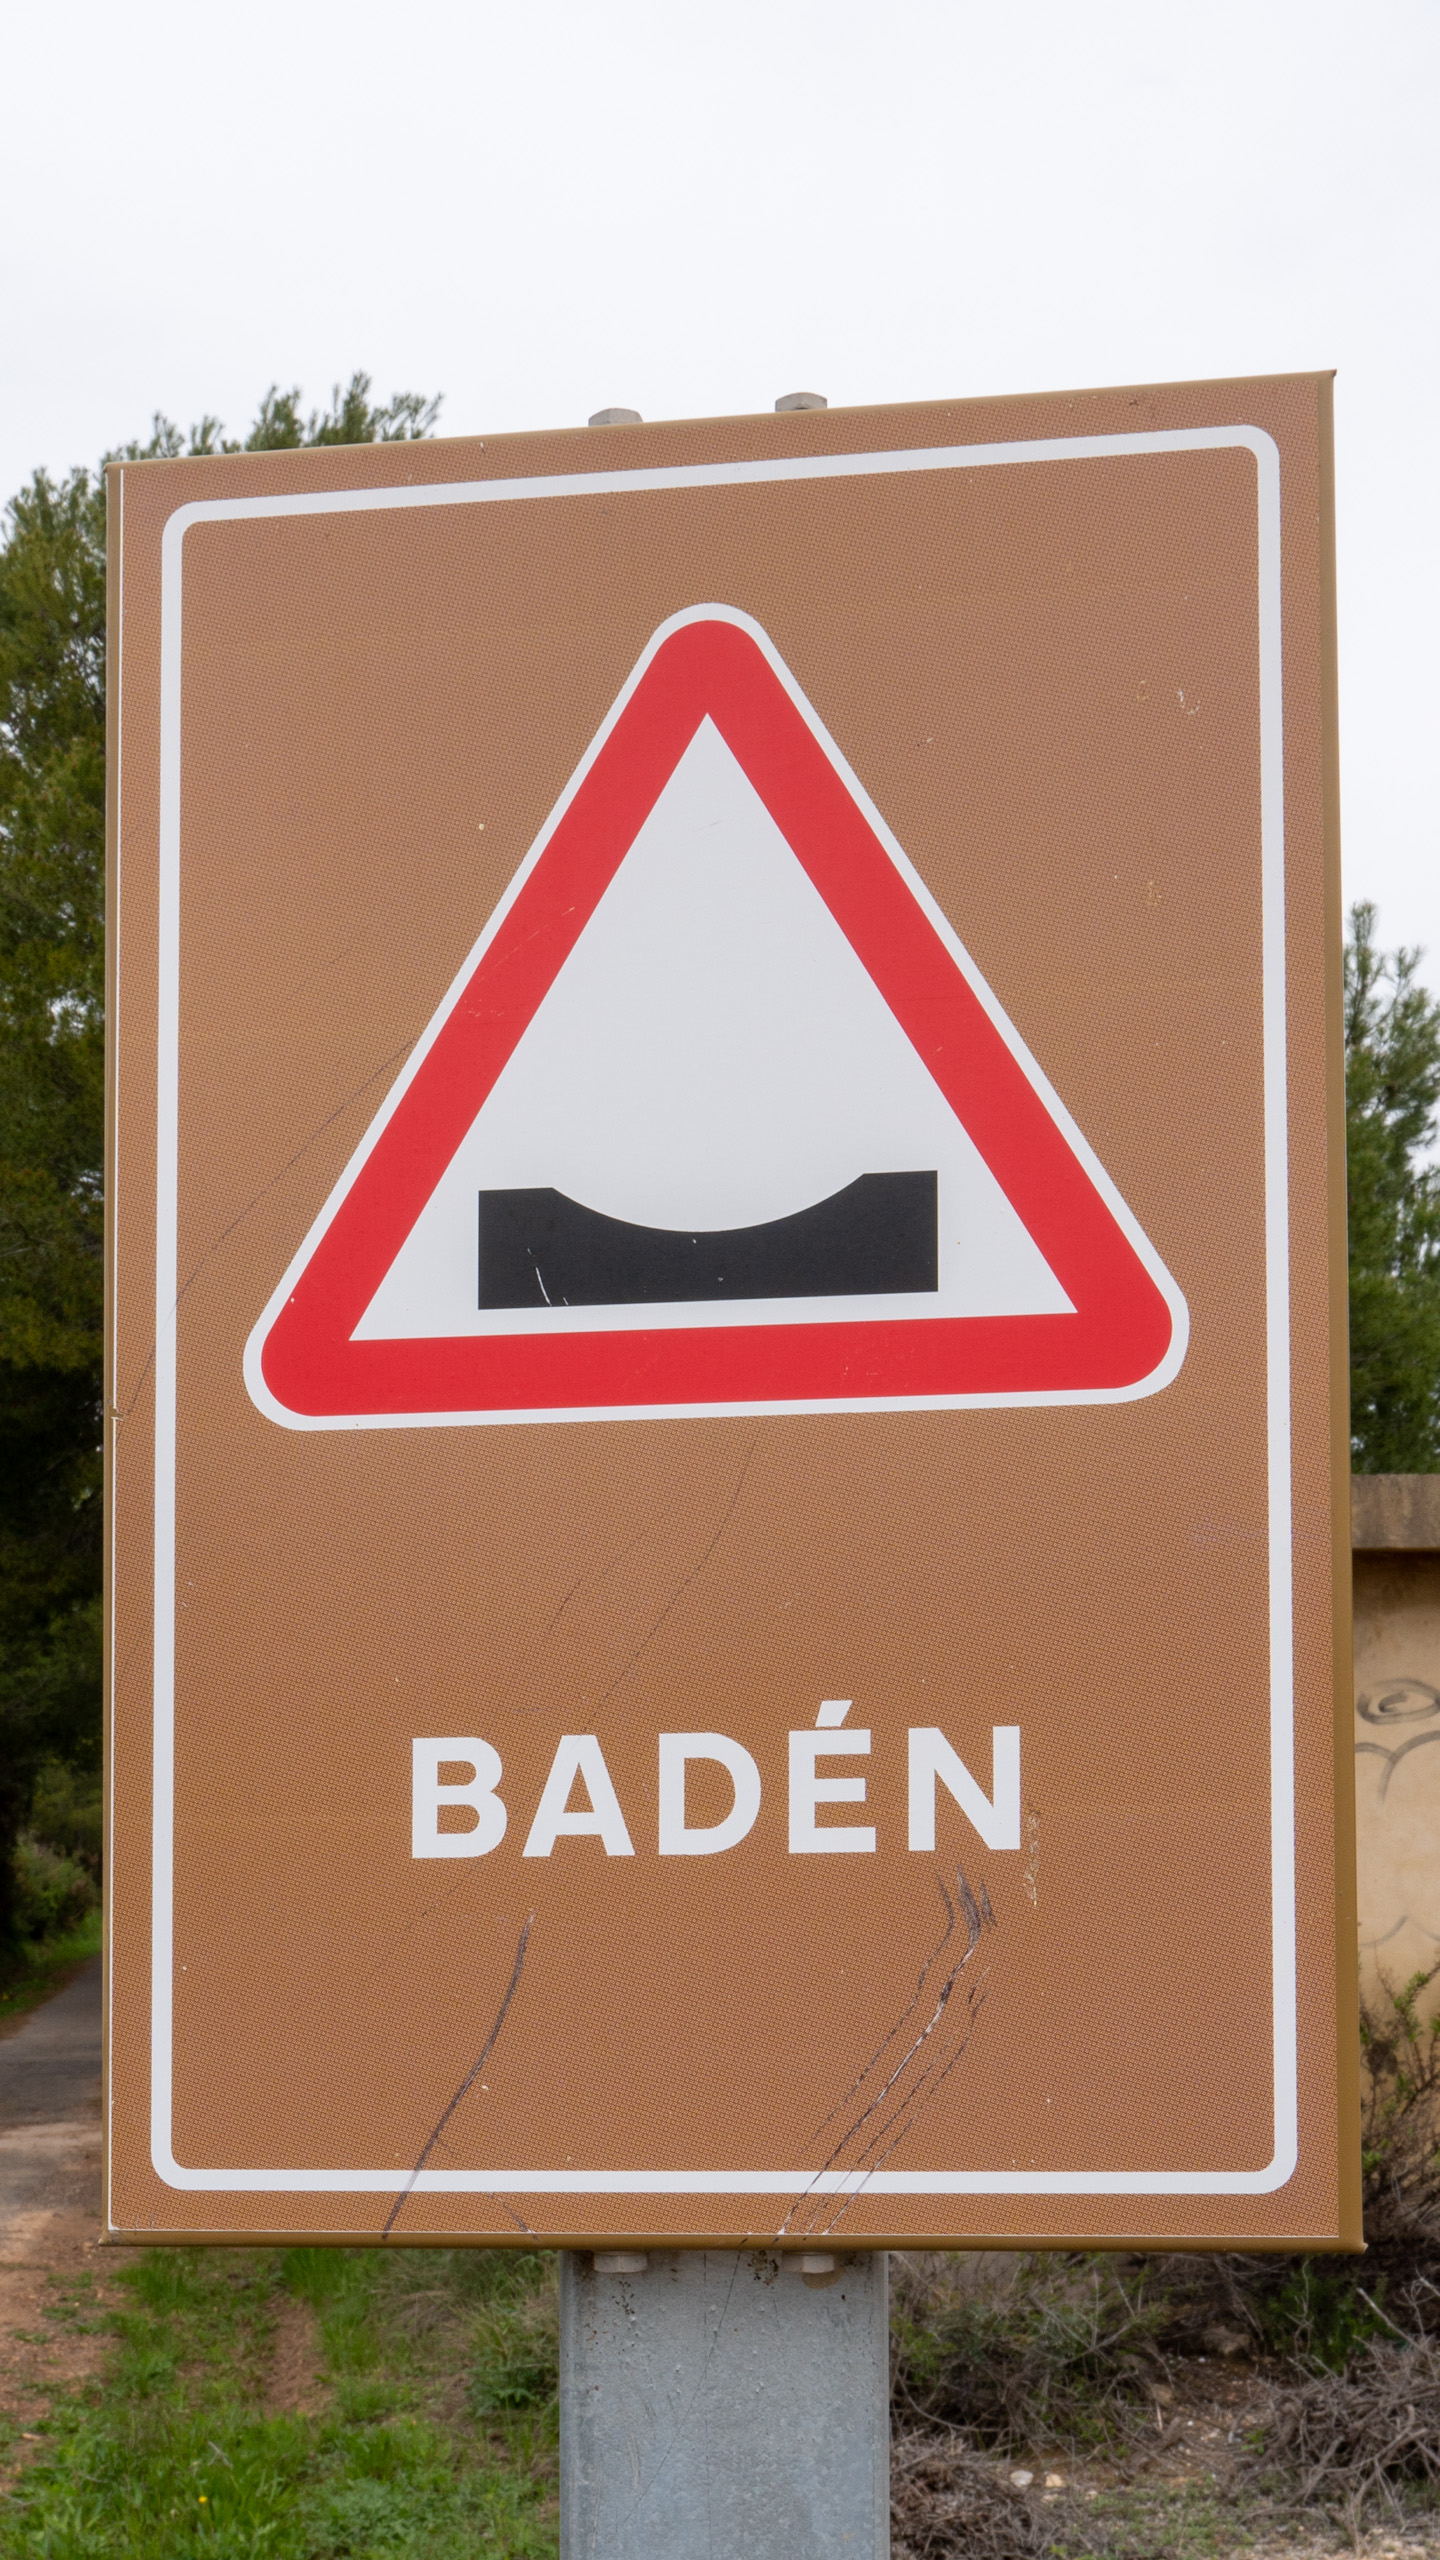 Baden, wie passend